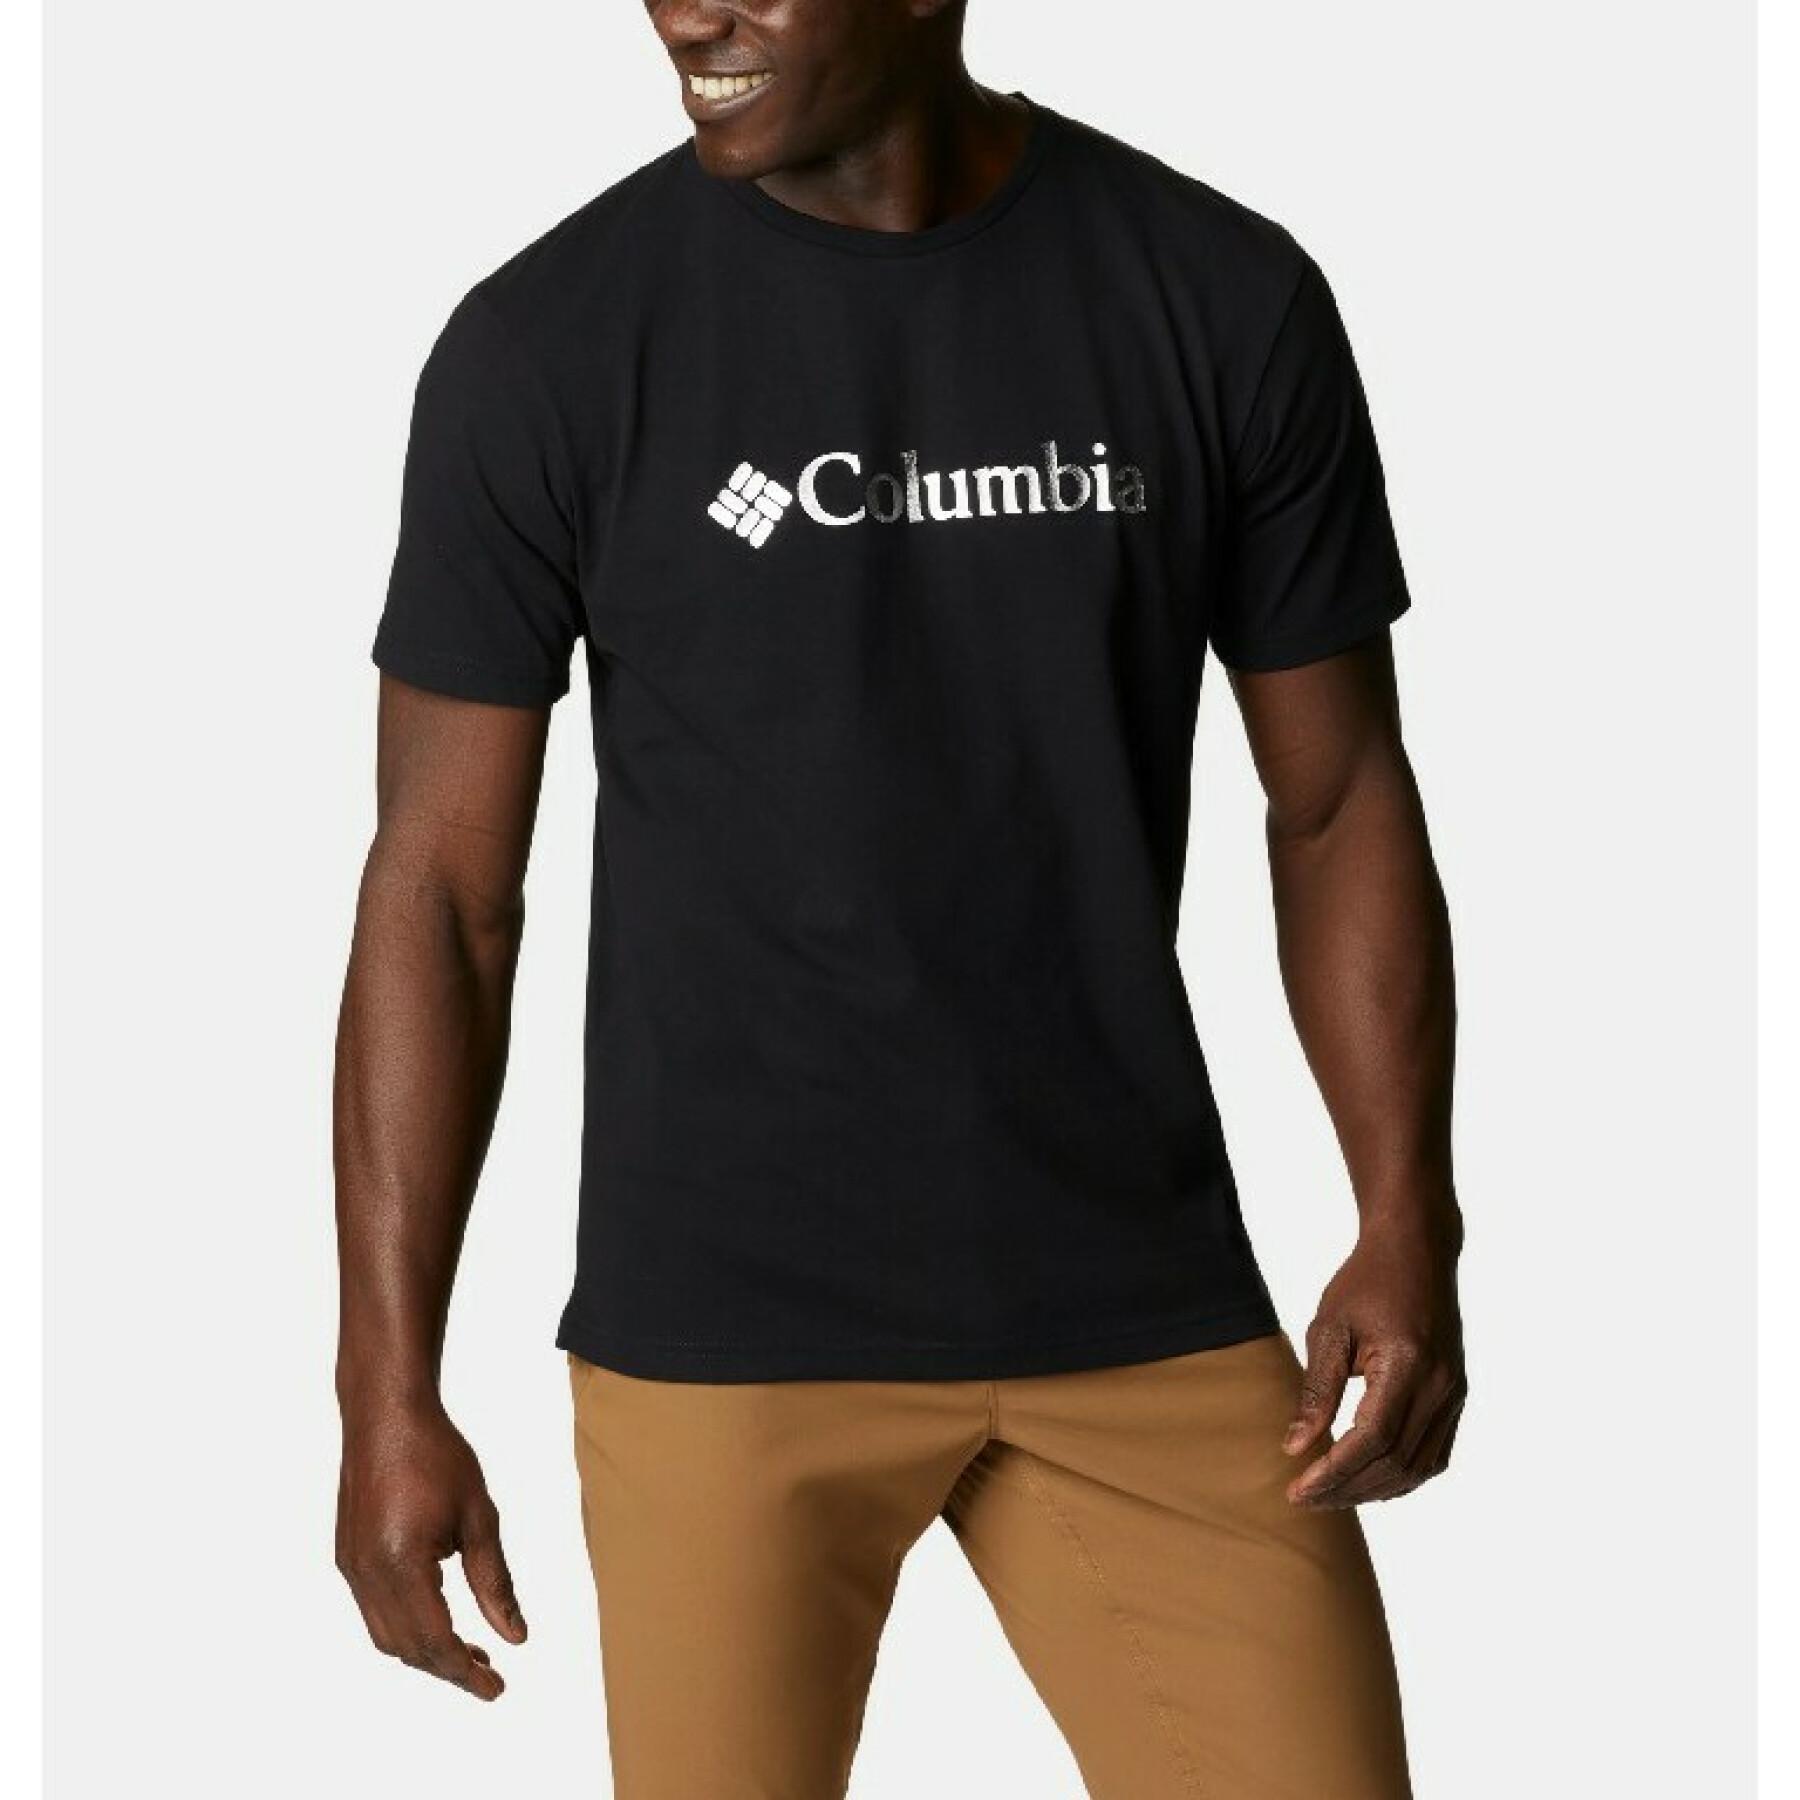 Camiseta Columbia Pacific Croing Graphic